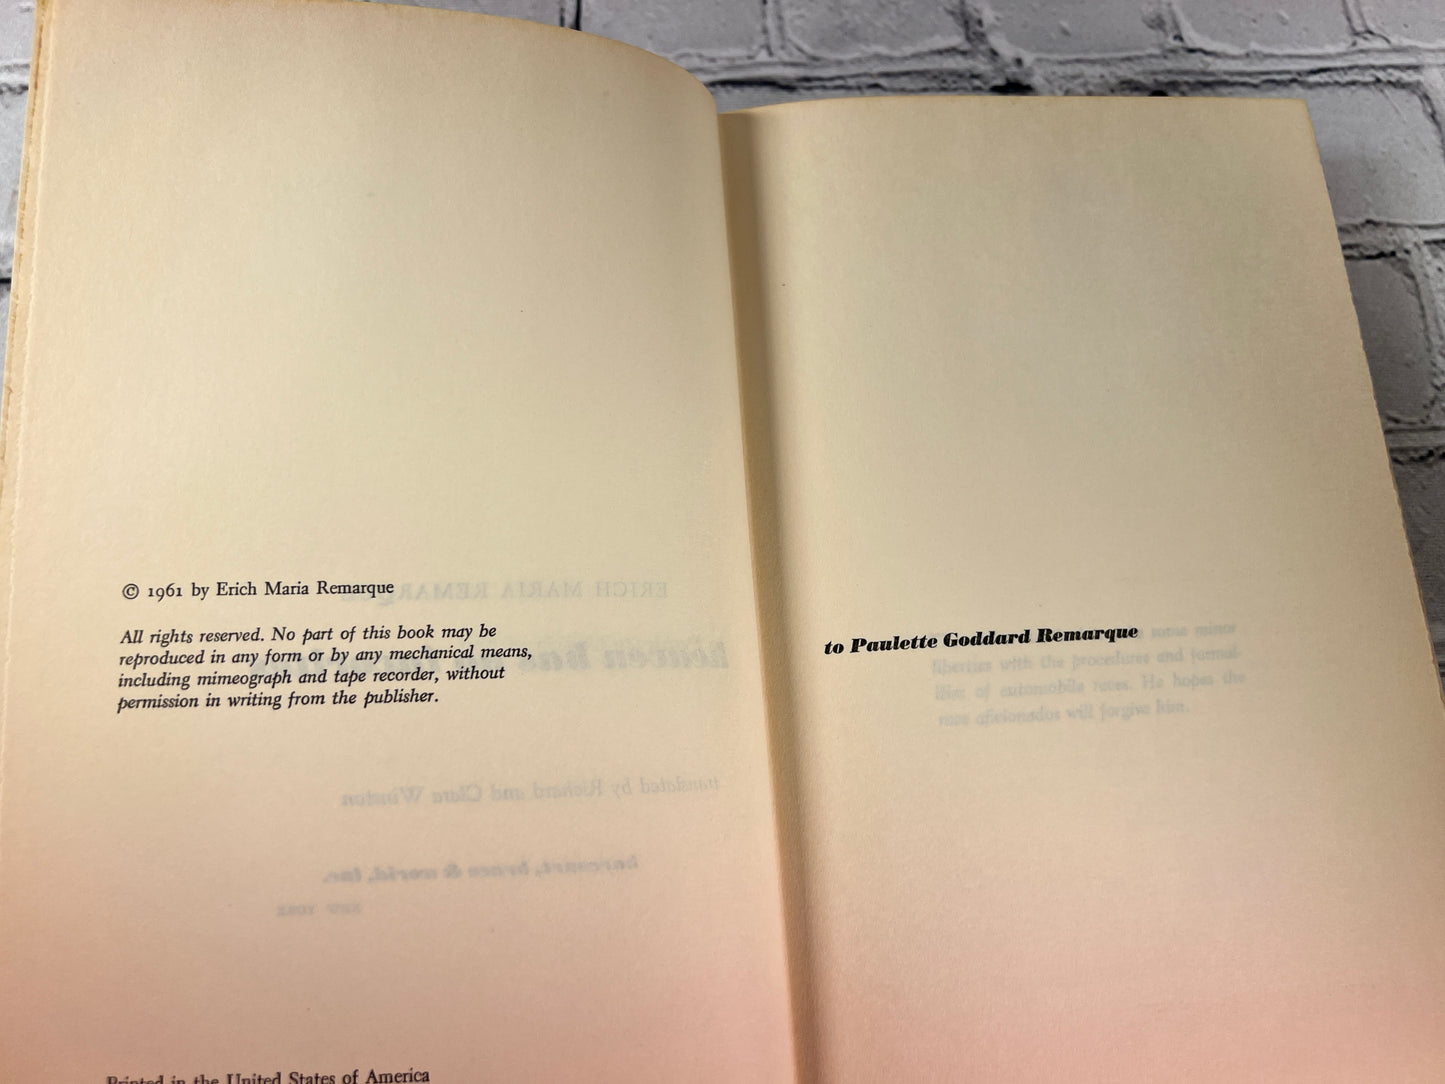 Heaven Has No Favorites by Erich Maria Remaraque [Book Club Edition · 1961]